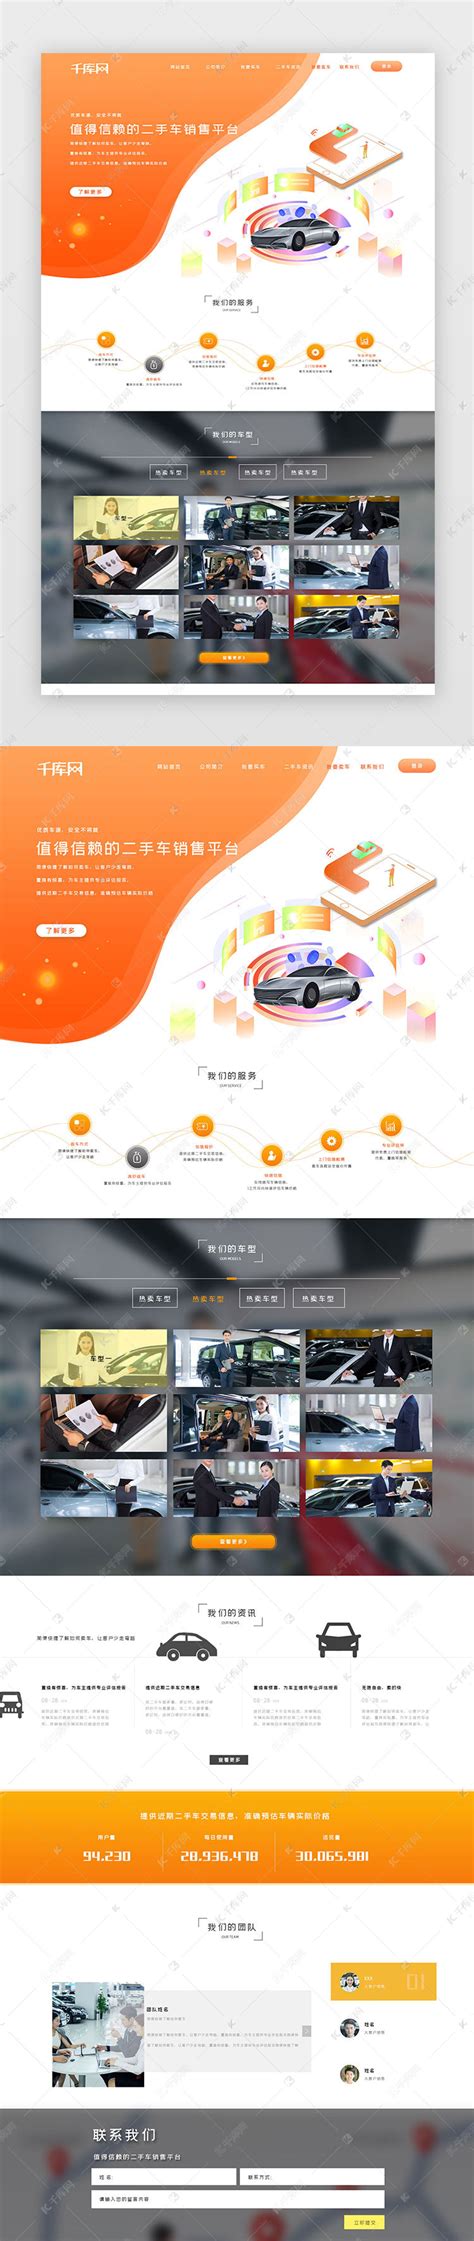 简洁橙色汽车租赁行业网站首页ui界面设计素材-千库网